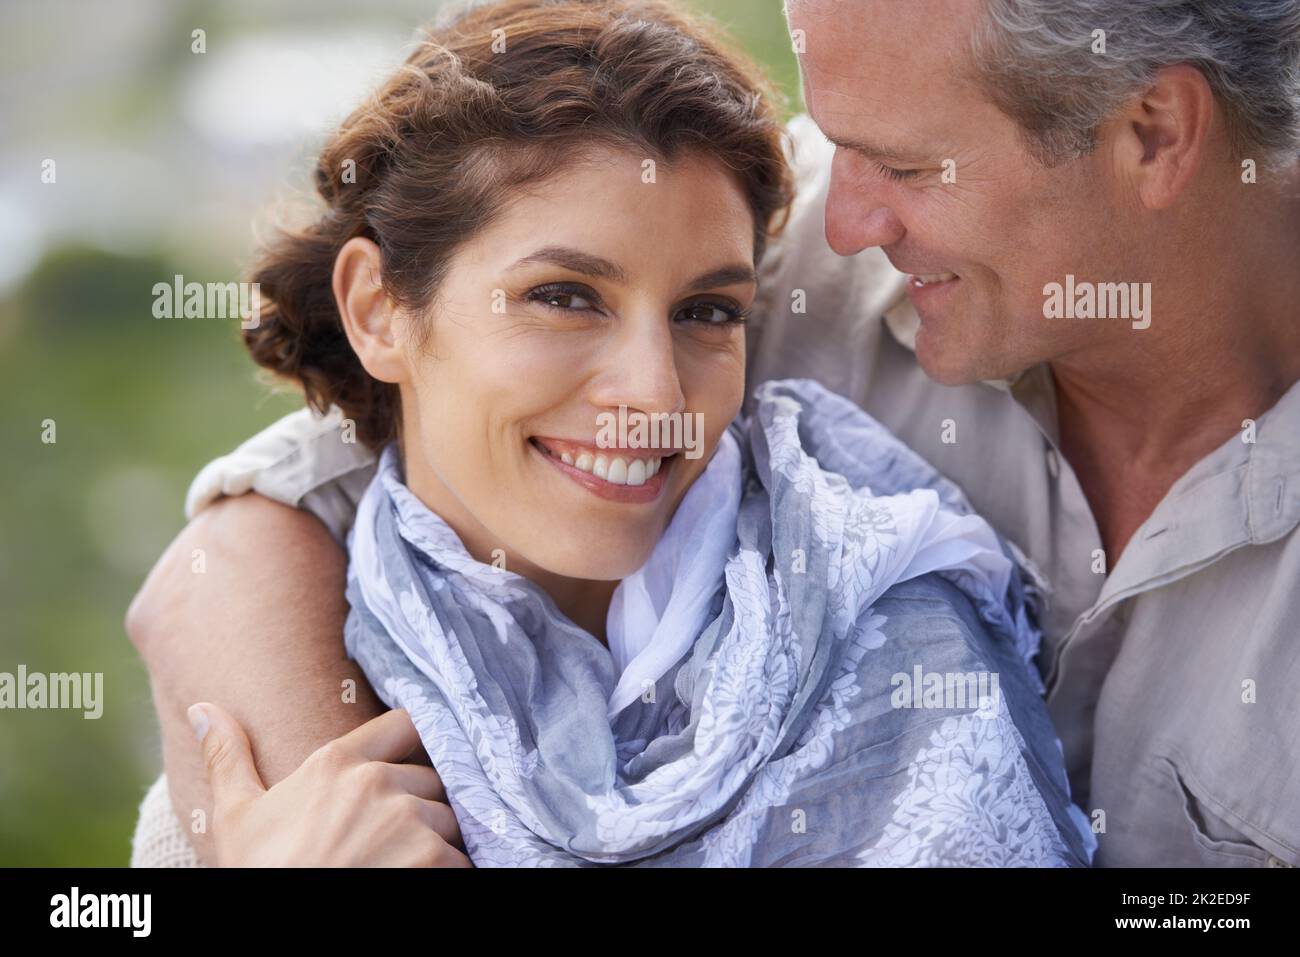 Einander schätzen. Ein glückliches reifes Paar mit ihren Köpfen liebevoll zusammen. Stockfoto